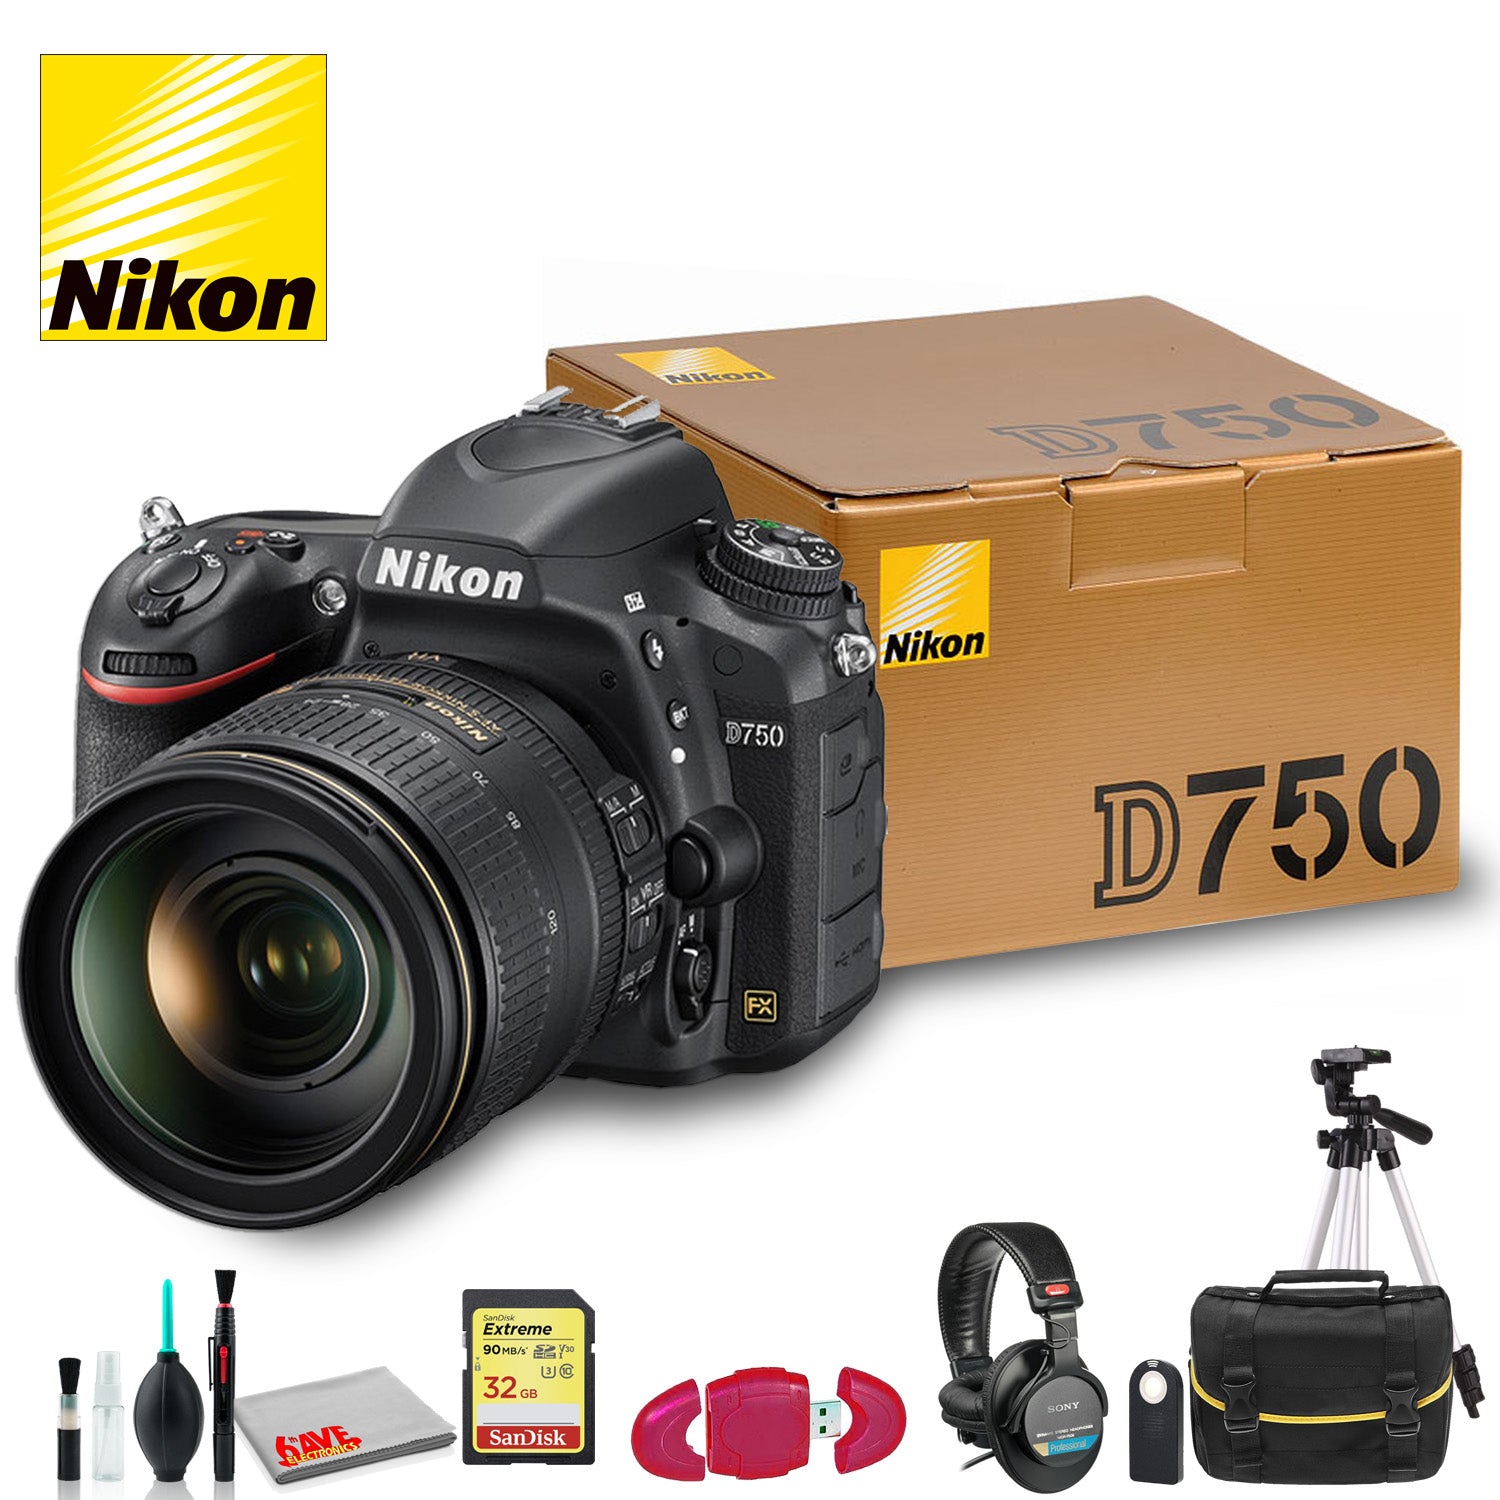 Nikon D750 DSLR Camera with 24-120mm Lens + DSLR Shoulder Bag, 77mm UV Filter and more